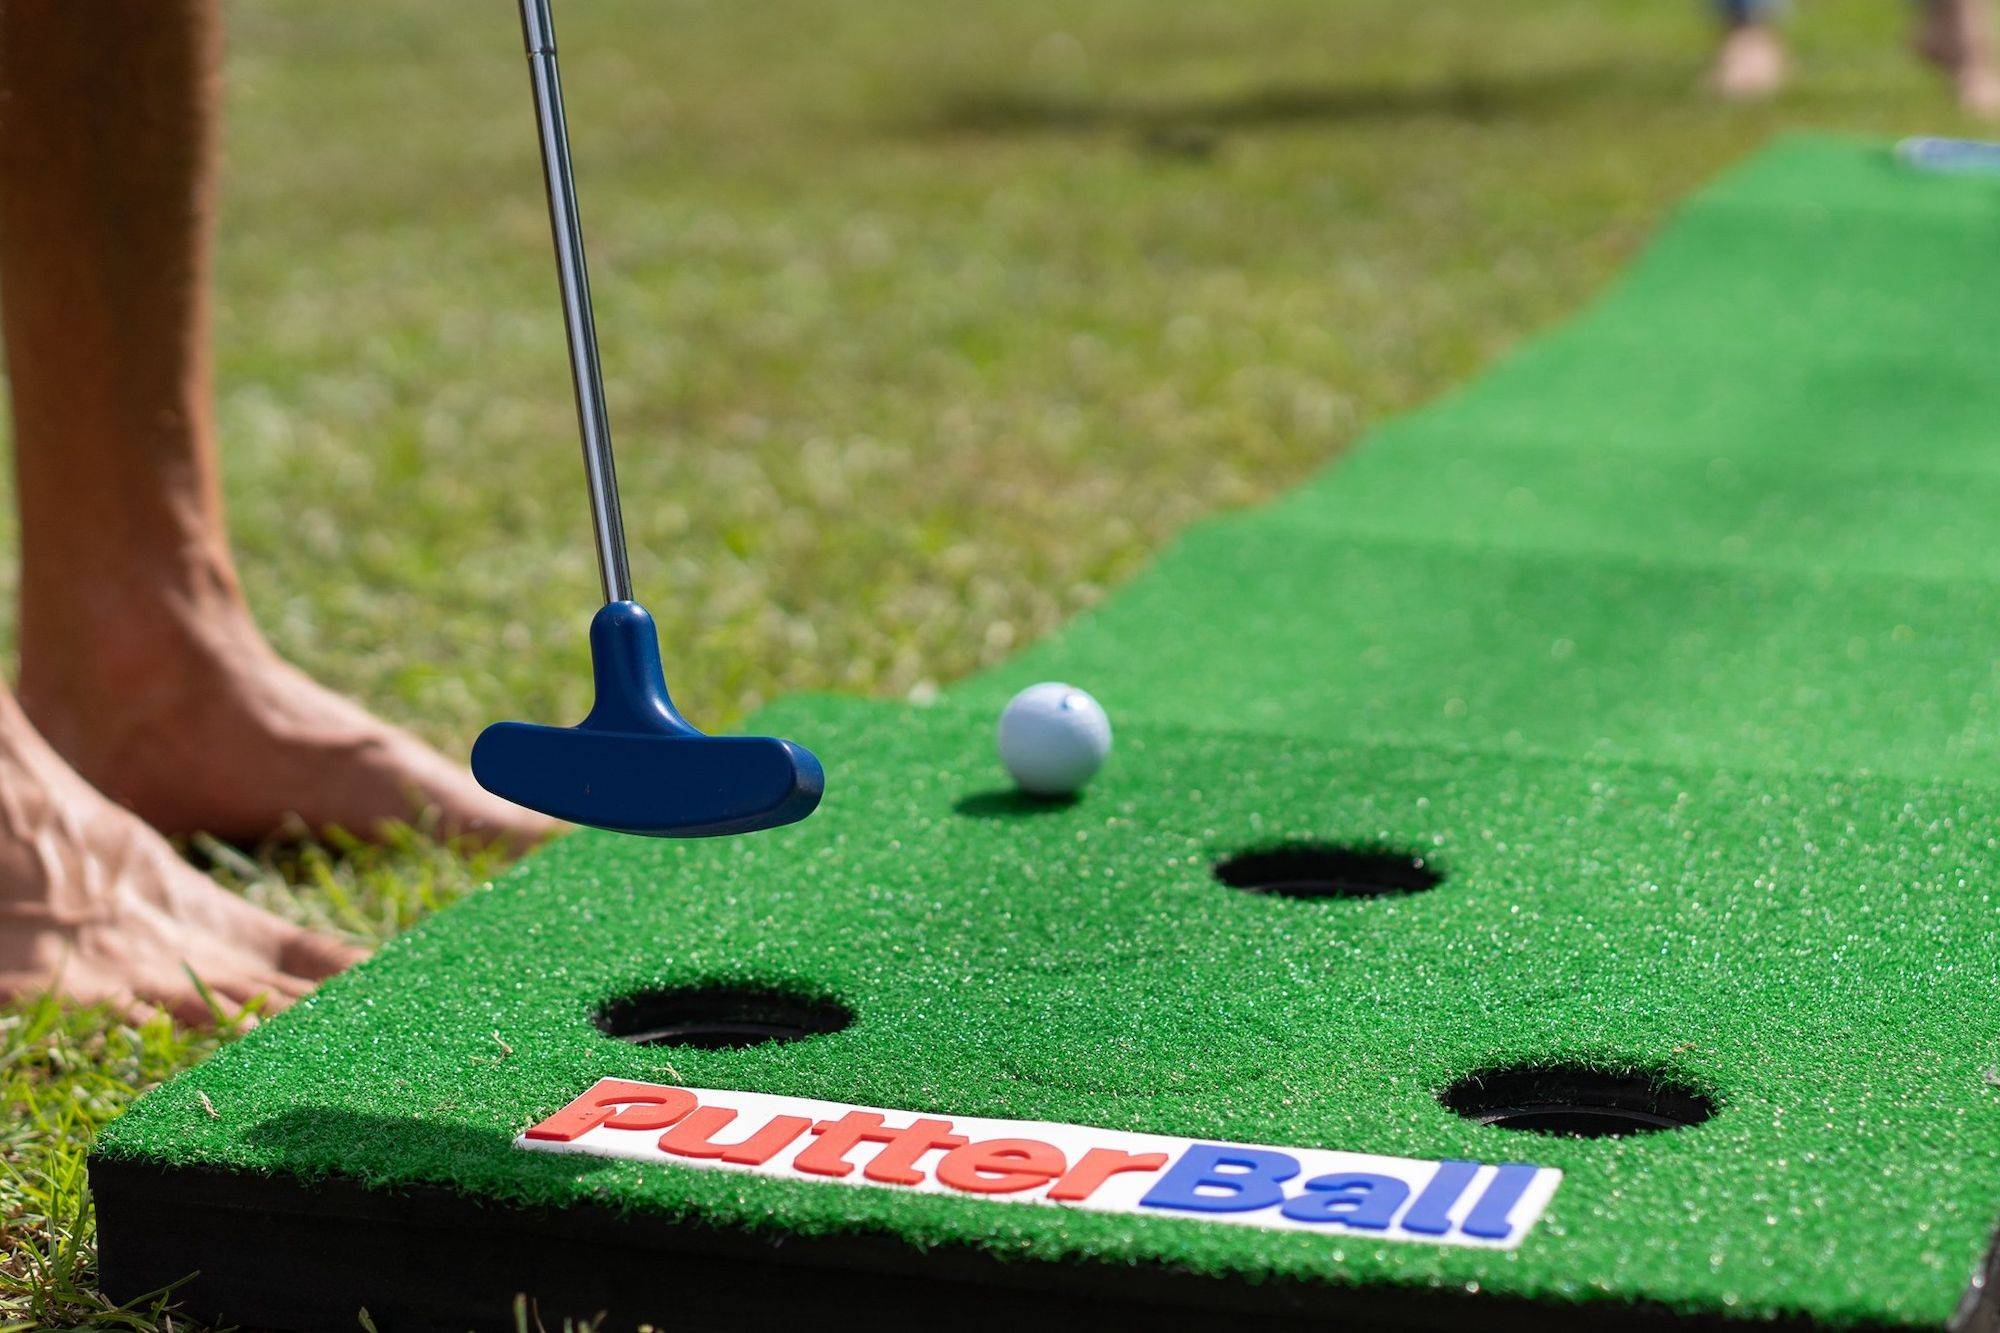 Lake hopatcong mini golf - 🧡 Материальное обеспечение игры в мини-гольф.